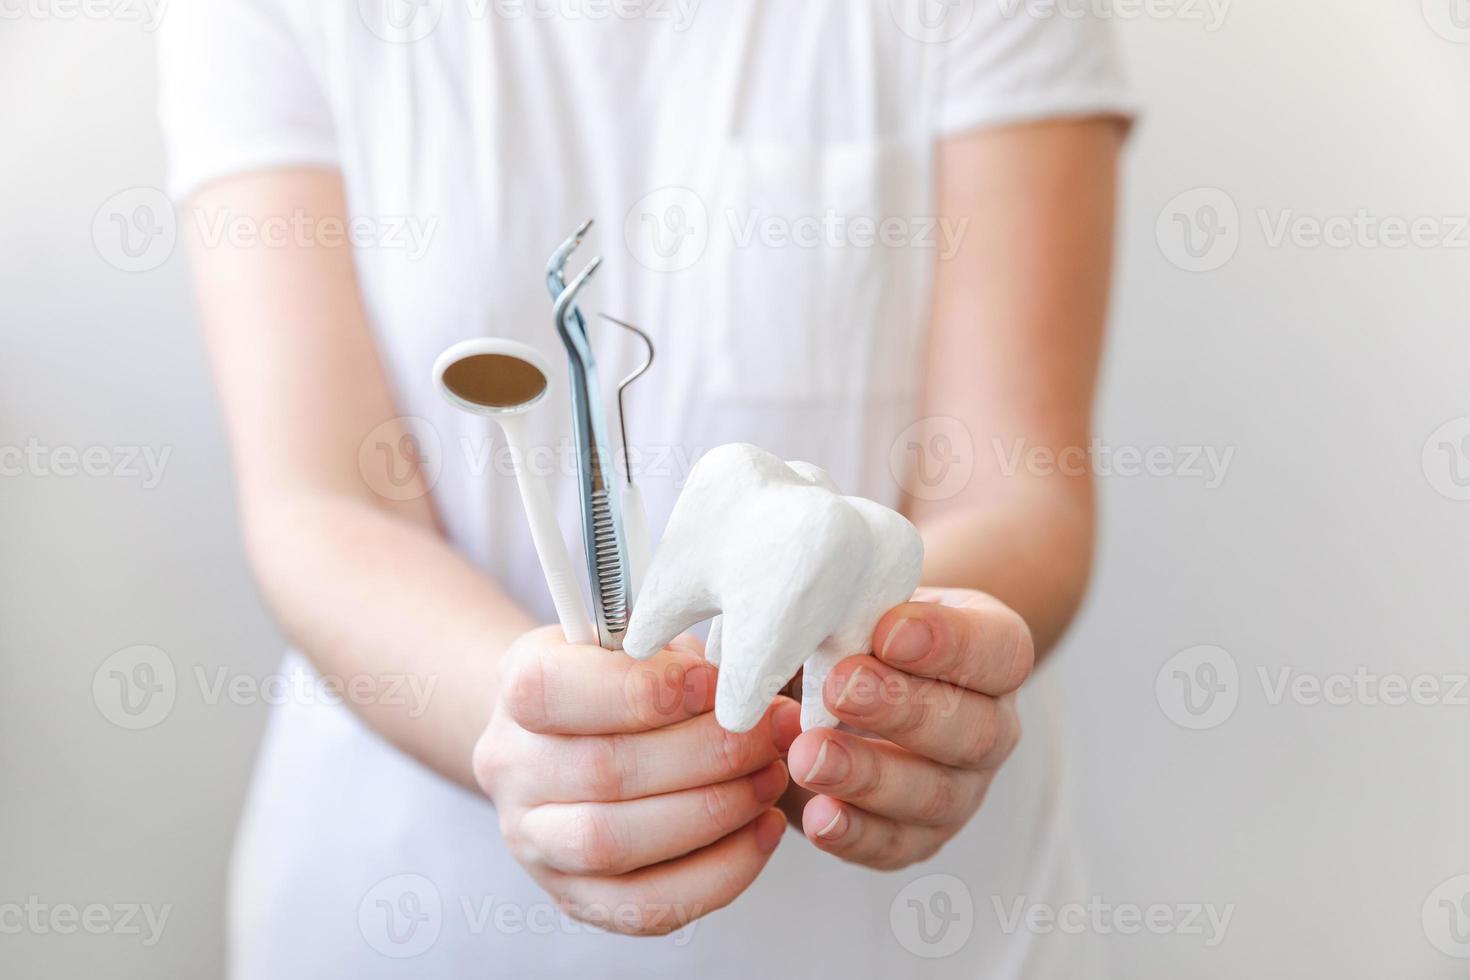 conceito de atendimento odontológico de saúde. mão de uma mulher segurando o modelo de dente branco saudável e ferramentas de dentista isoladas no fundo branco. clareamento dos dentes, higiene bucal dental, restauração dos dentes, dia do dentista. foto